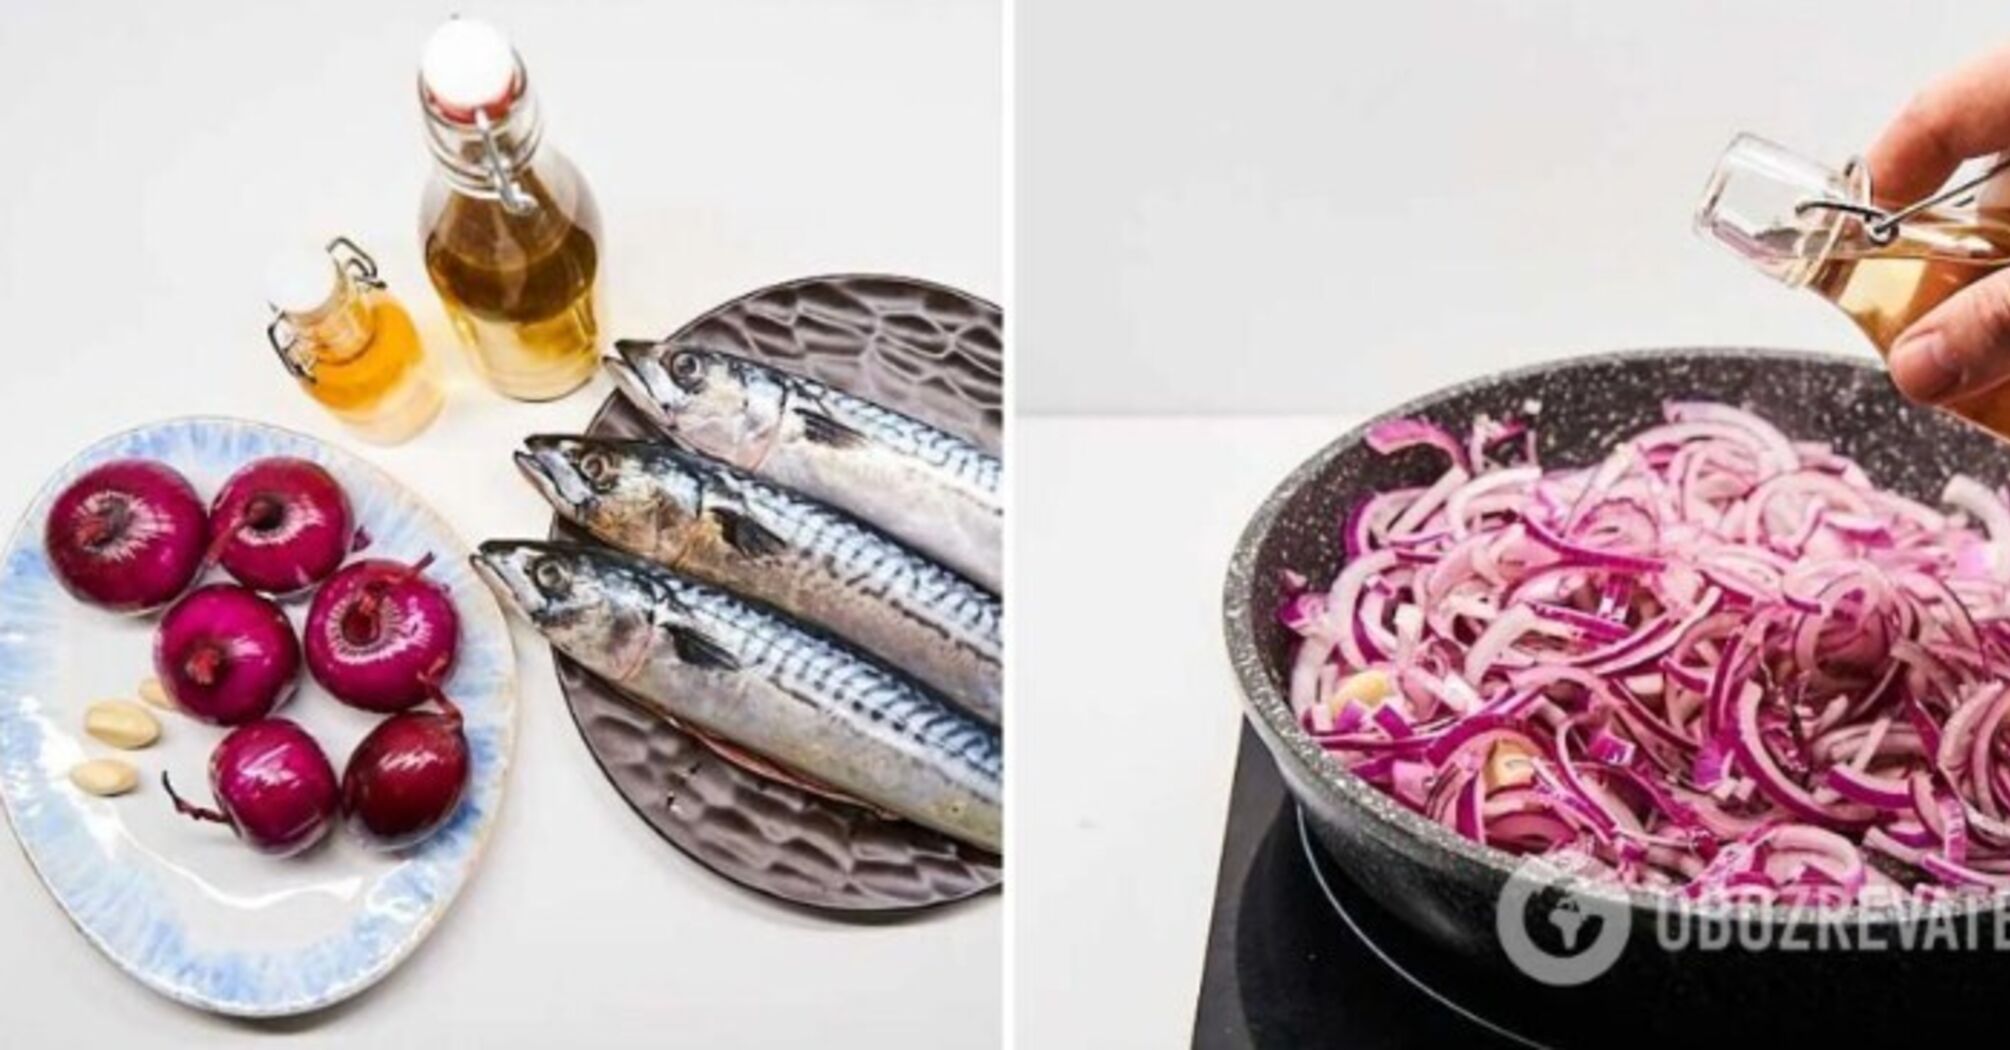 Recipe for a delicious mackerel marinade